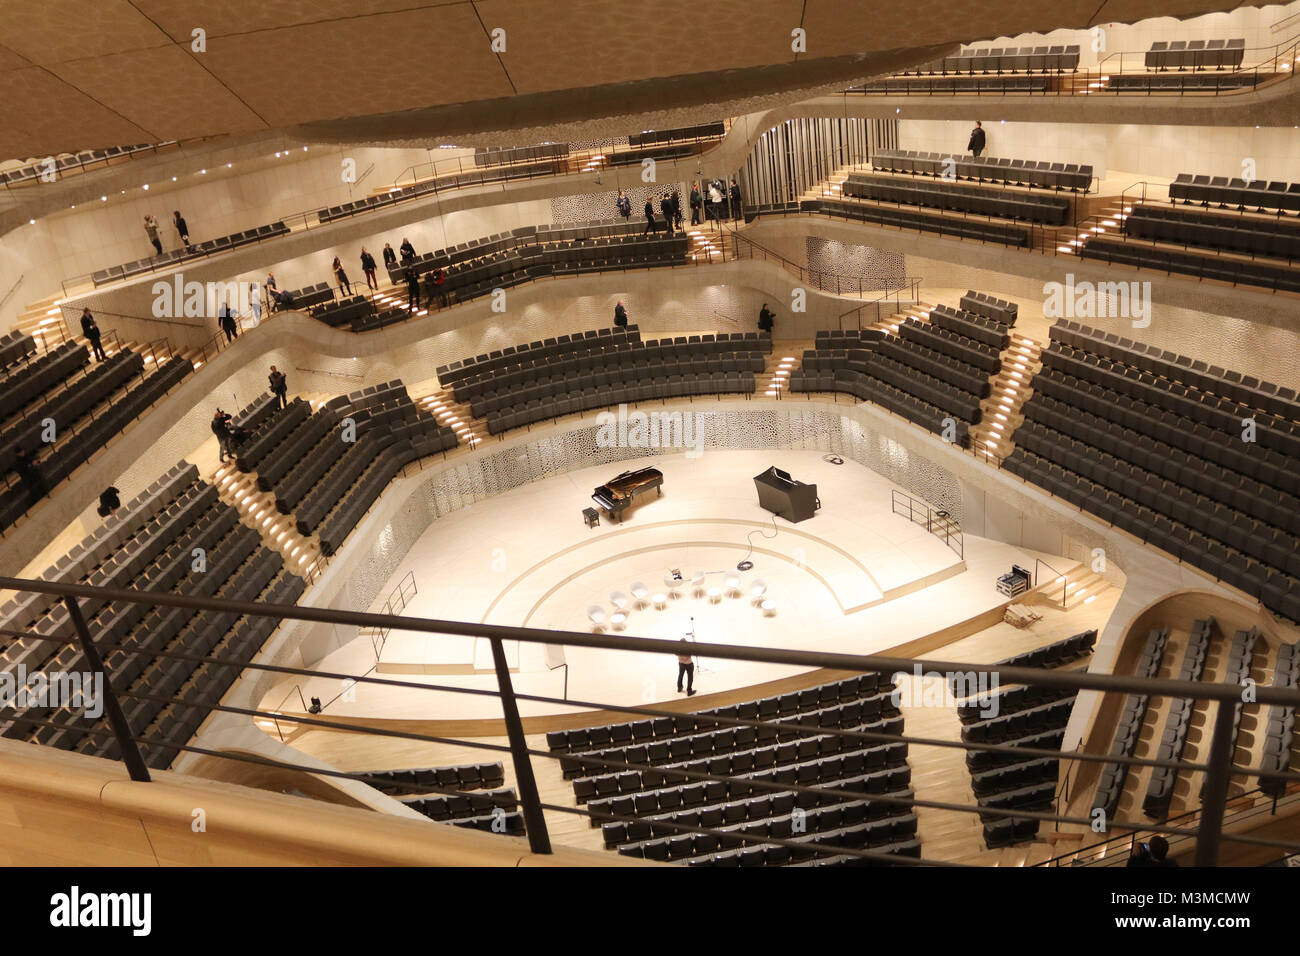 Grosser Saal, Eroeffnung deer Plaza der Elbphilharmonie in Hamburg,  04.11.2016 Stock Photo - Alamy